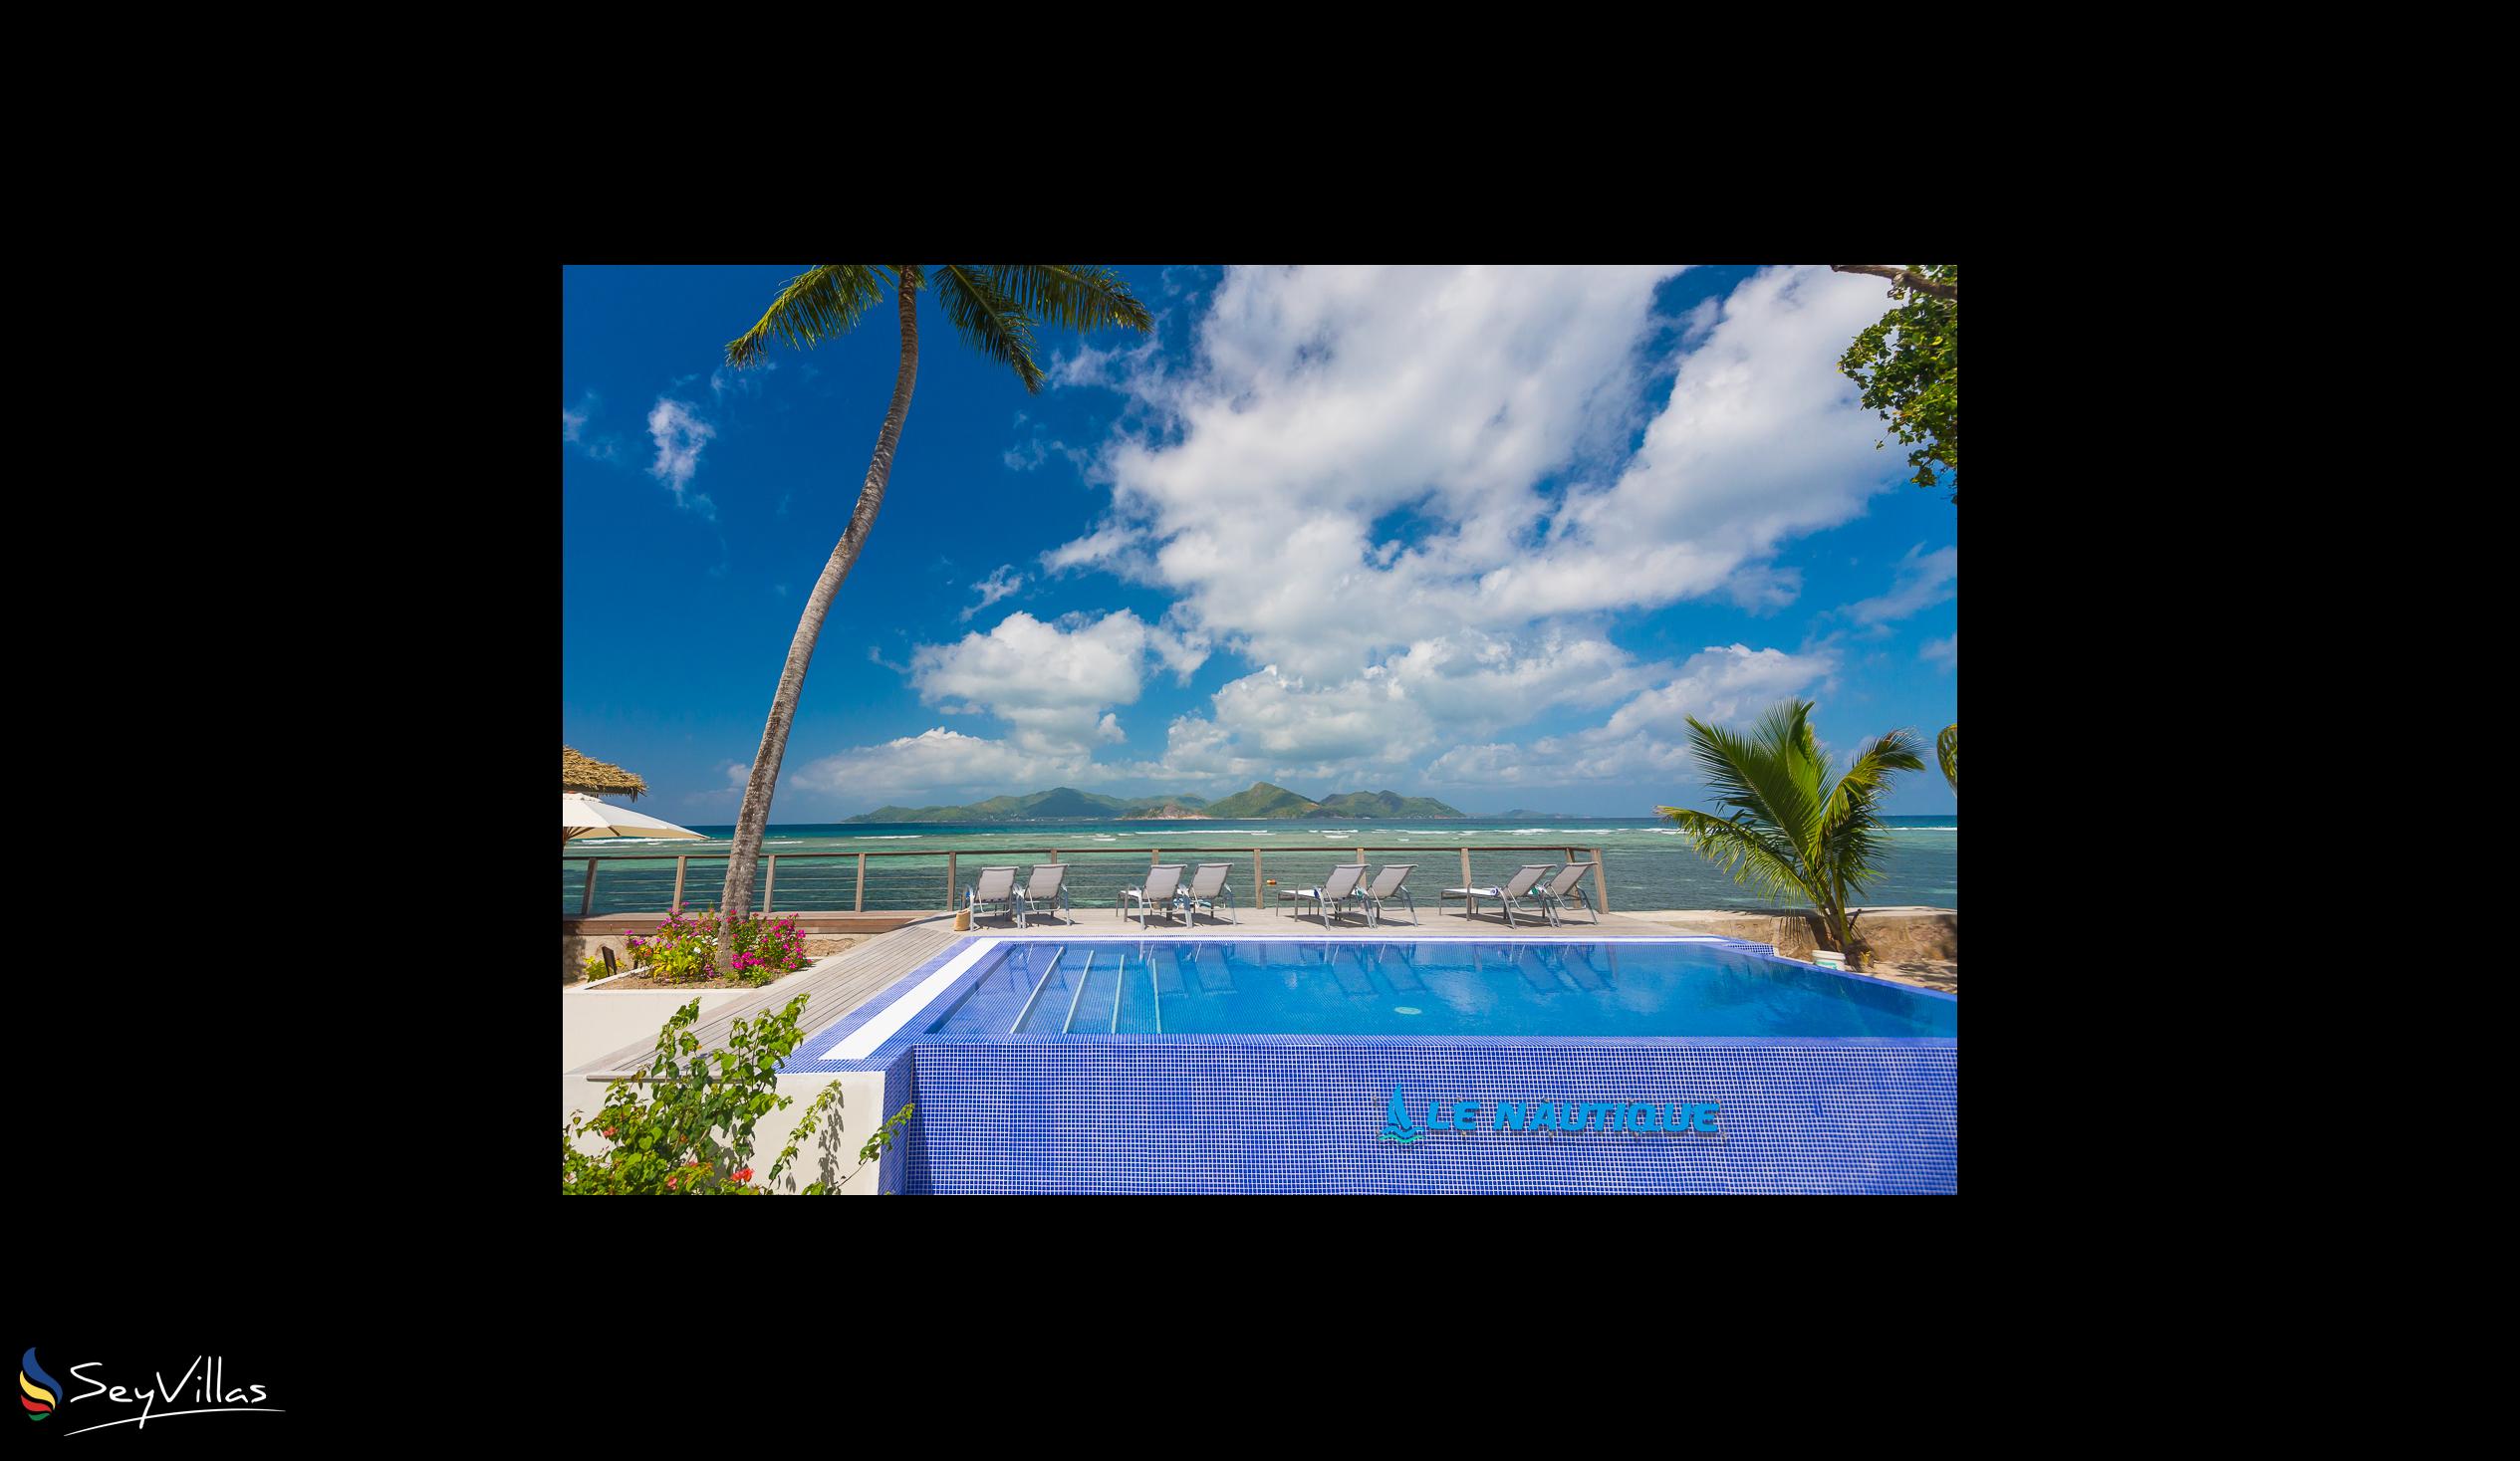 Foto 31: Le Nautique Luxury Waterfront Hotel - Aussenbereich - La Digue (Seychellen)